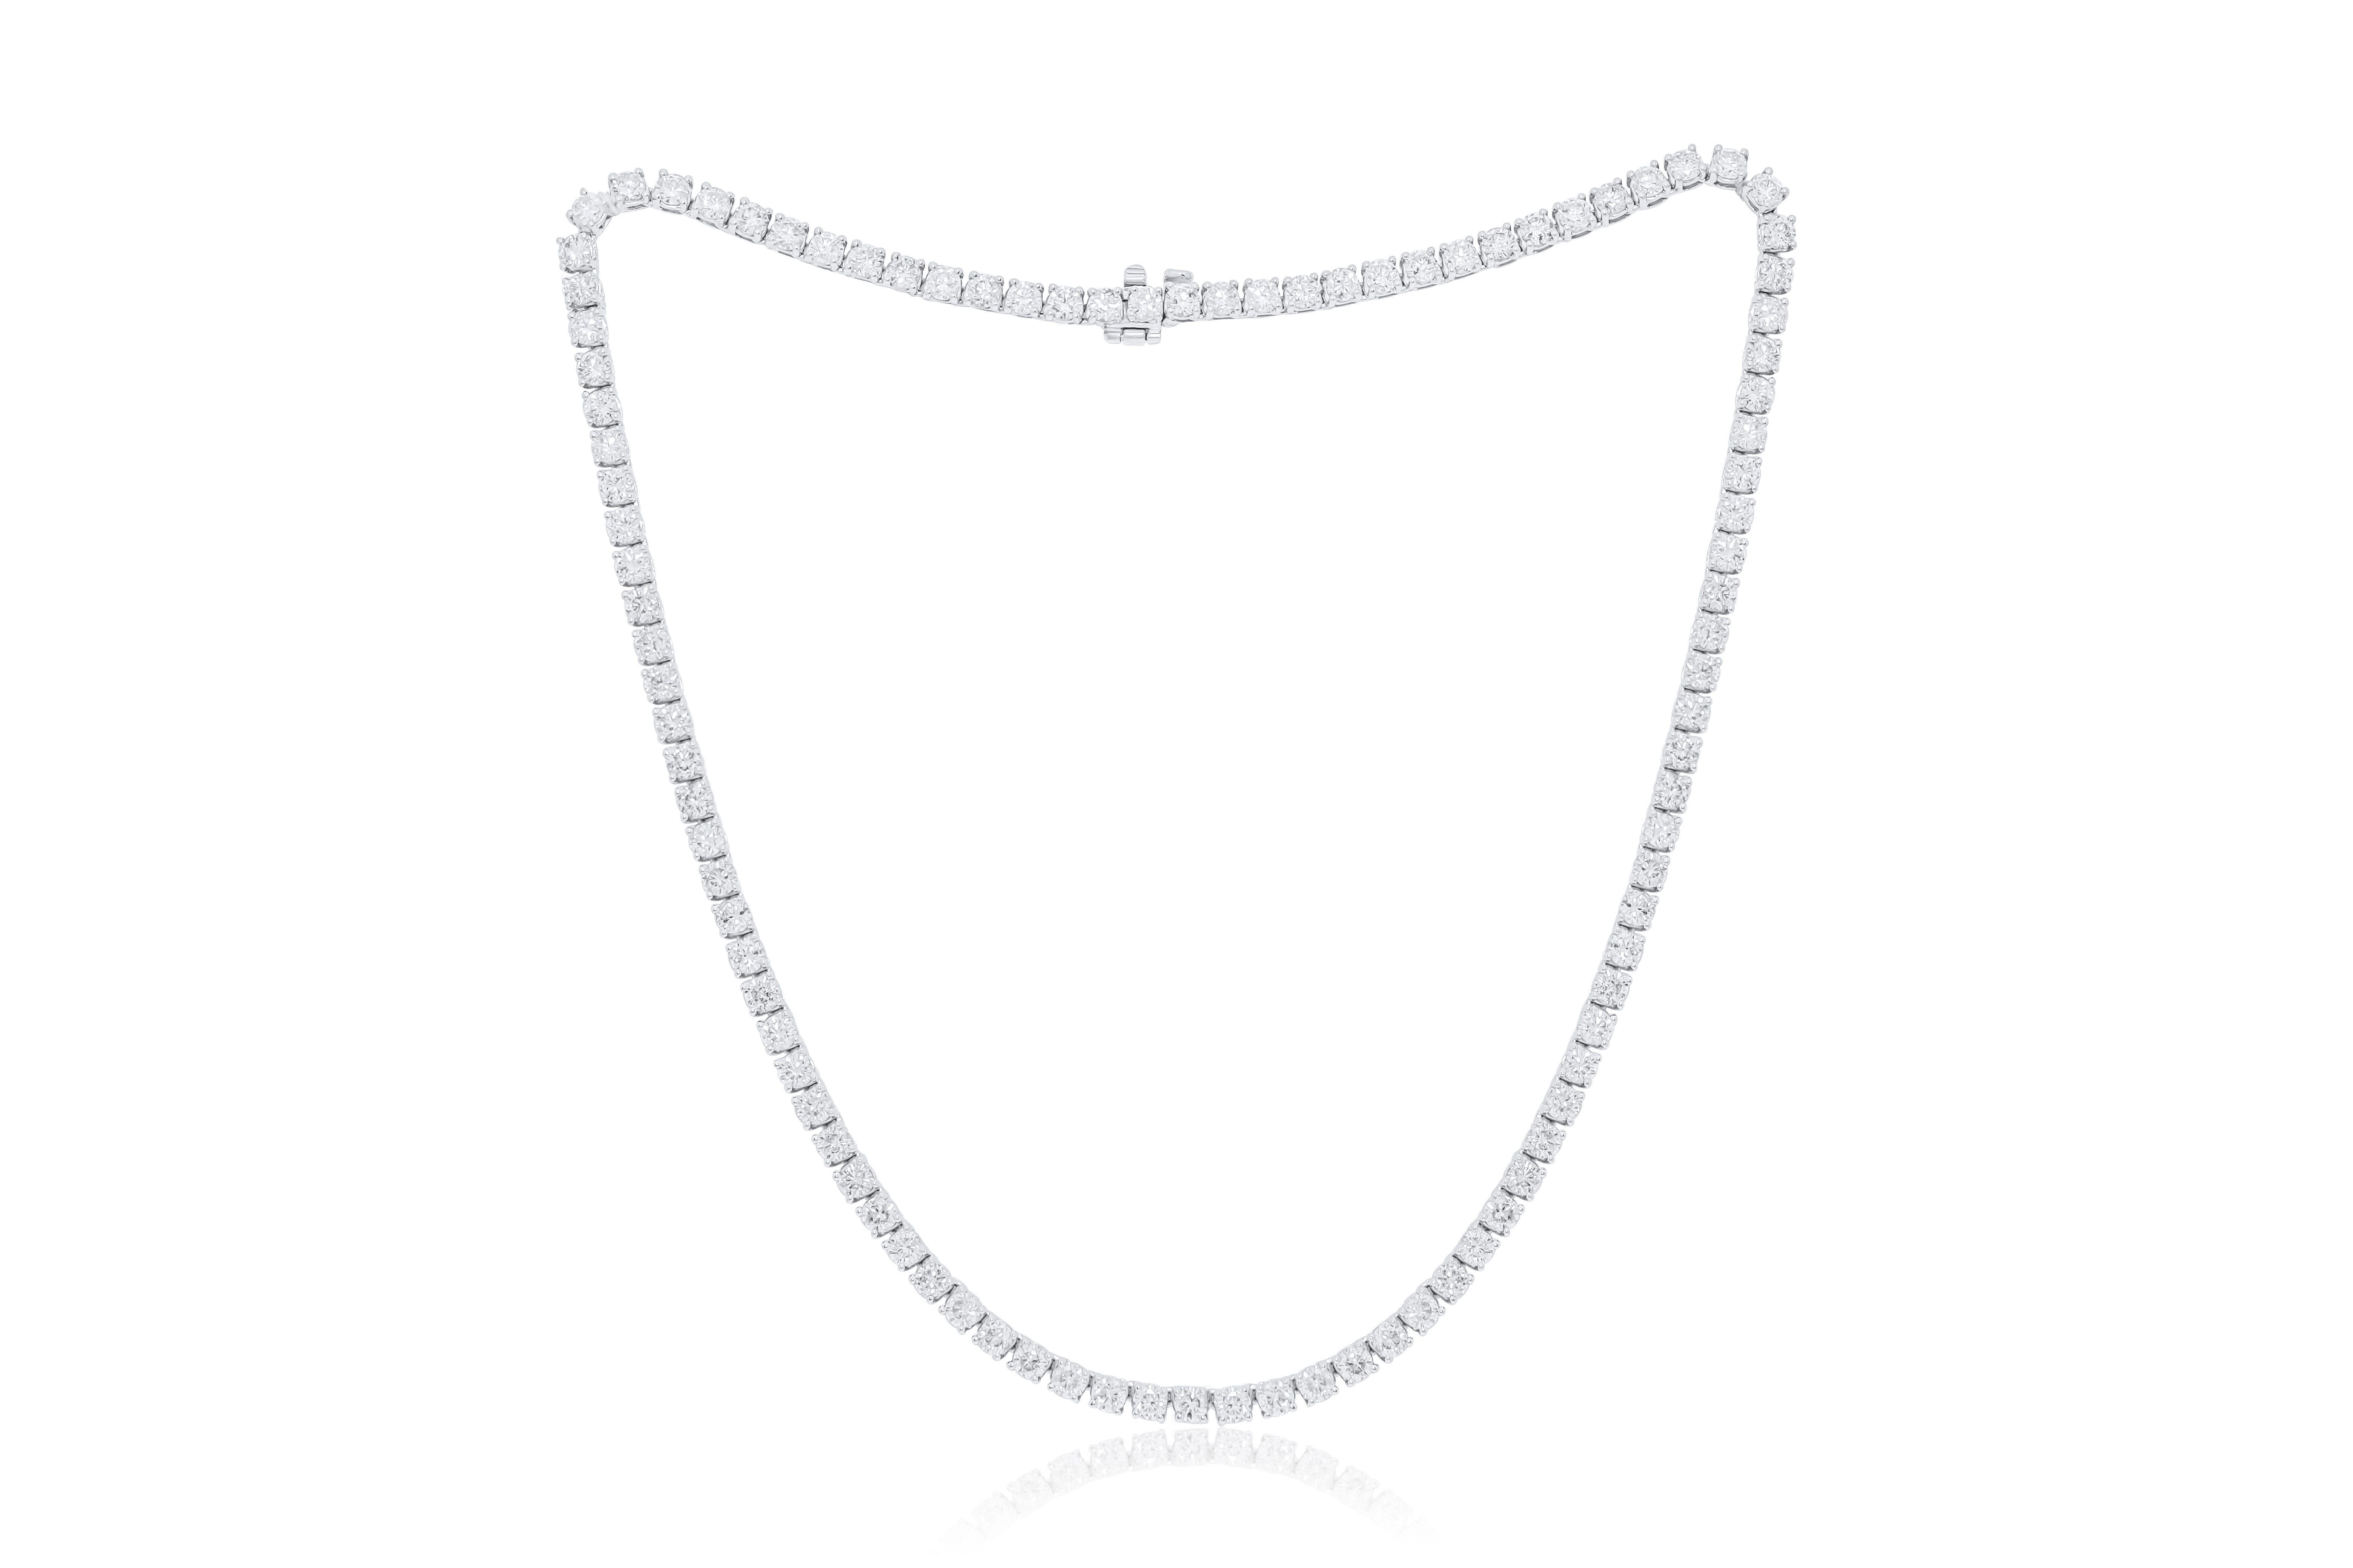 Individuelle 18 k Weißgold 4 Zacken Diamant Tennis Halskette  41,00 ct  runde Diamanten 79 Steine je 0,51 FG Farbe SI Reinheit. Ausgezeichneter Schnitt.